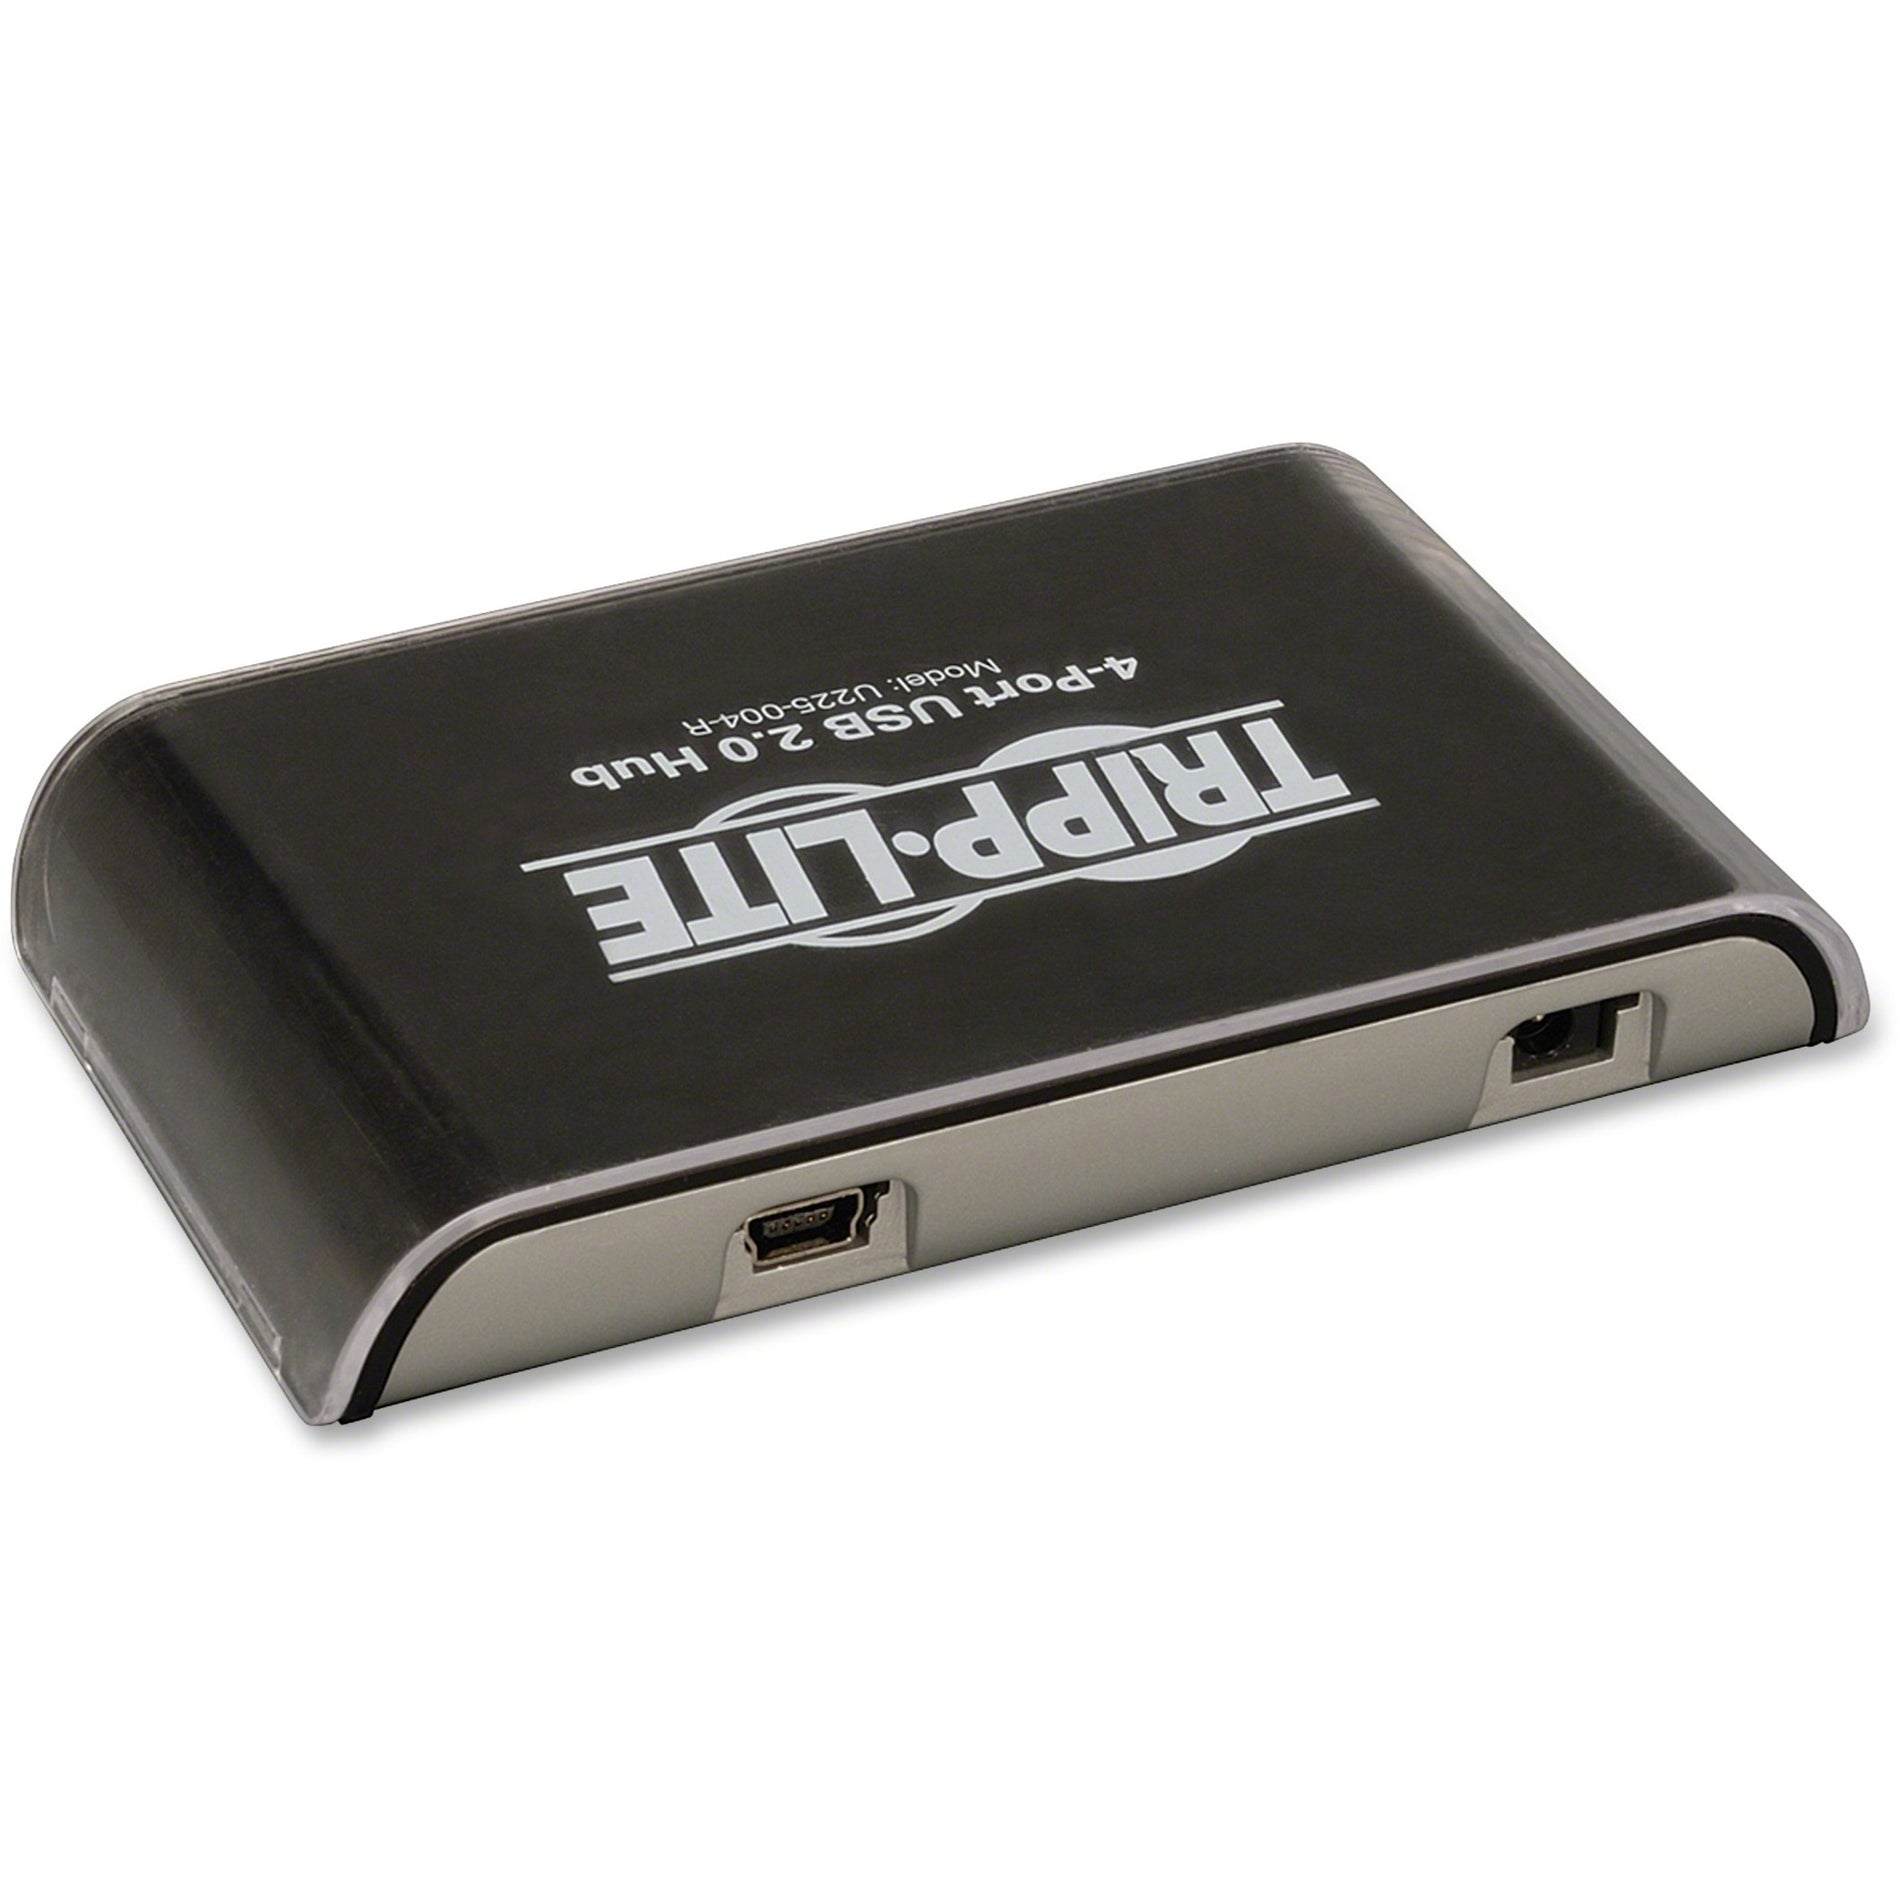 Tripp Lite U225-004-R 4-Port USB ミニ ハブ ブラック コンパクト で 便利 な USB ハブ マック や PC ブランド名: トリップライト